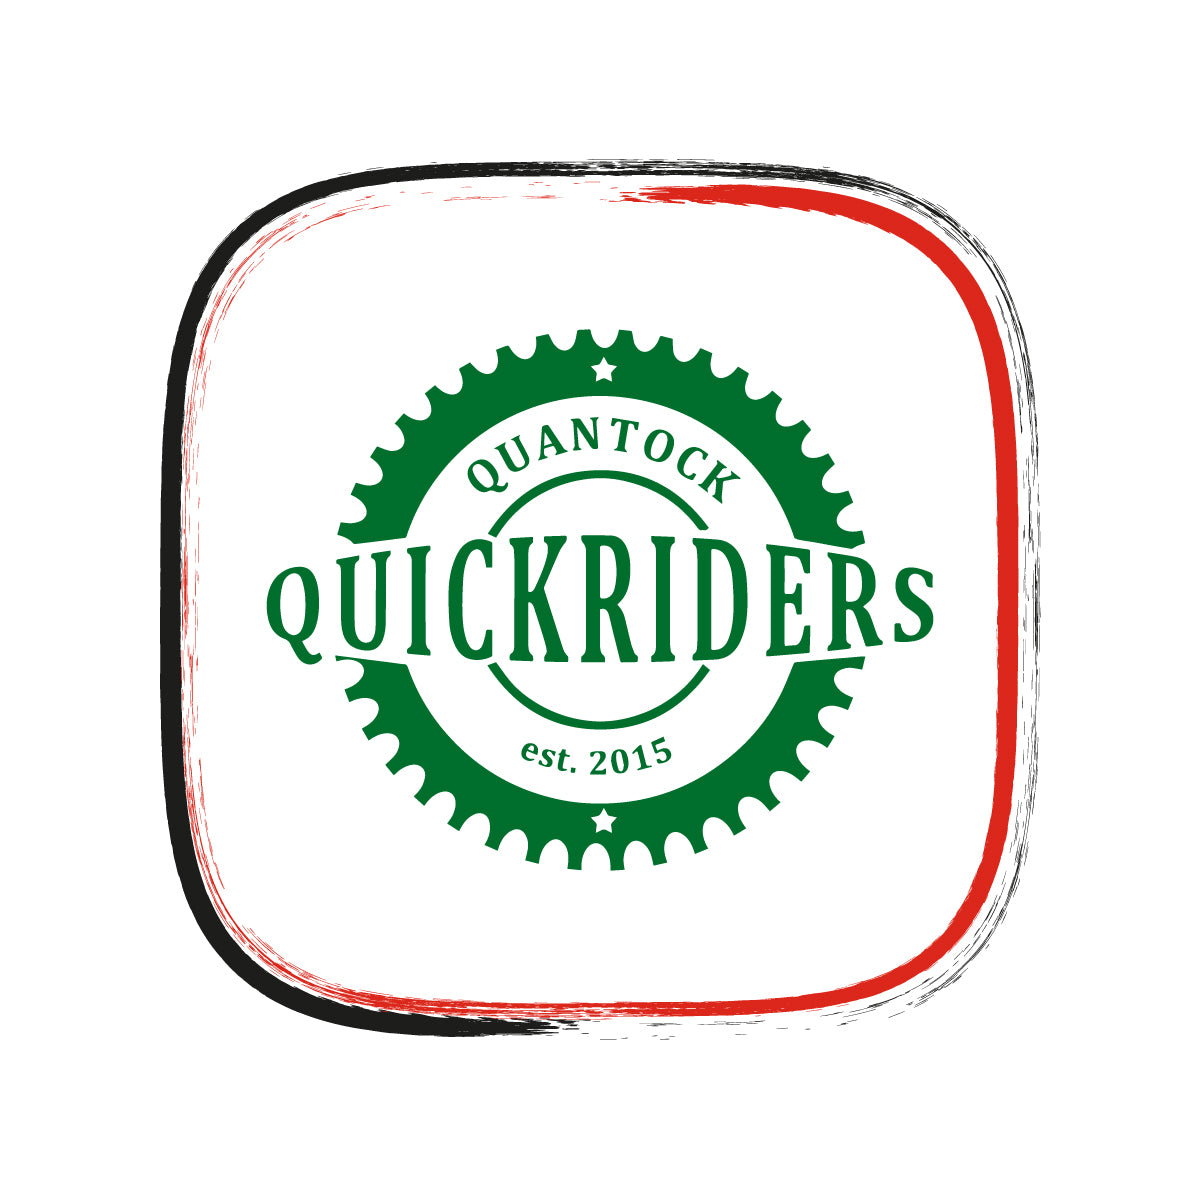 Quantock Quickriders